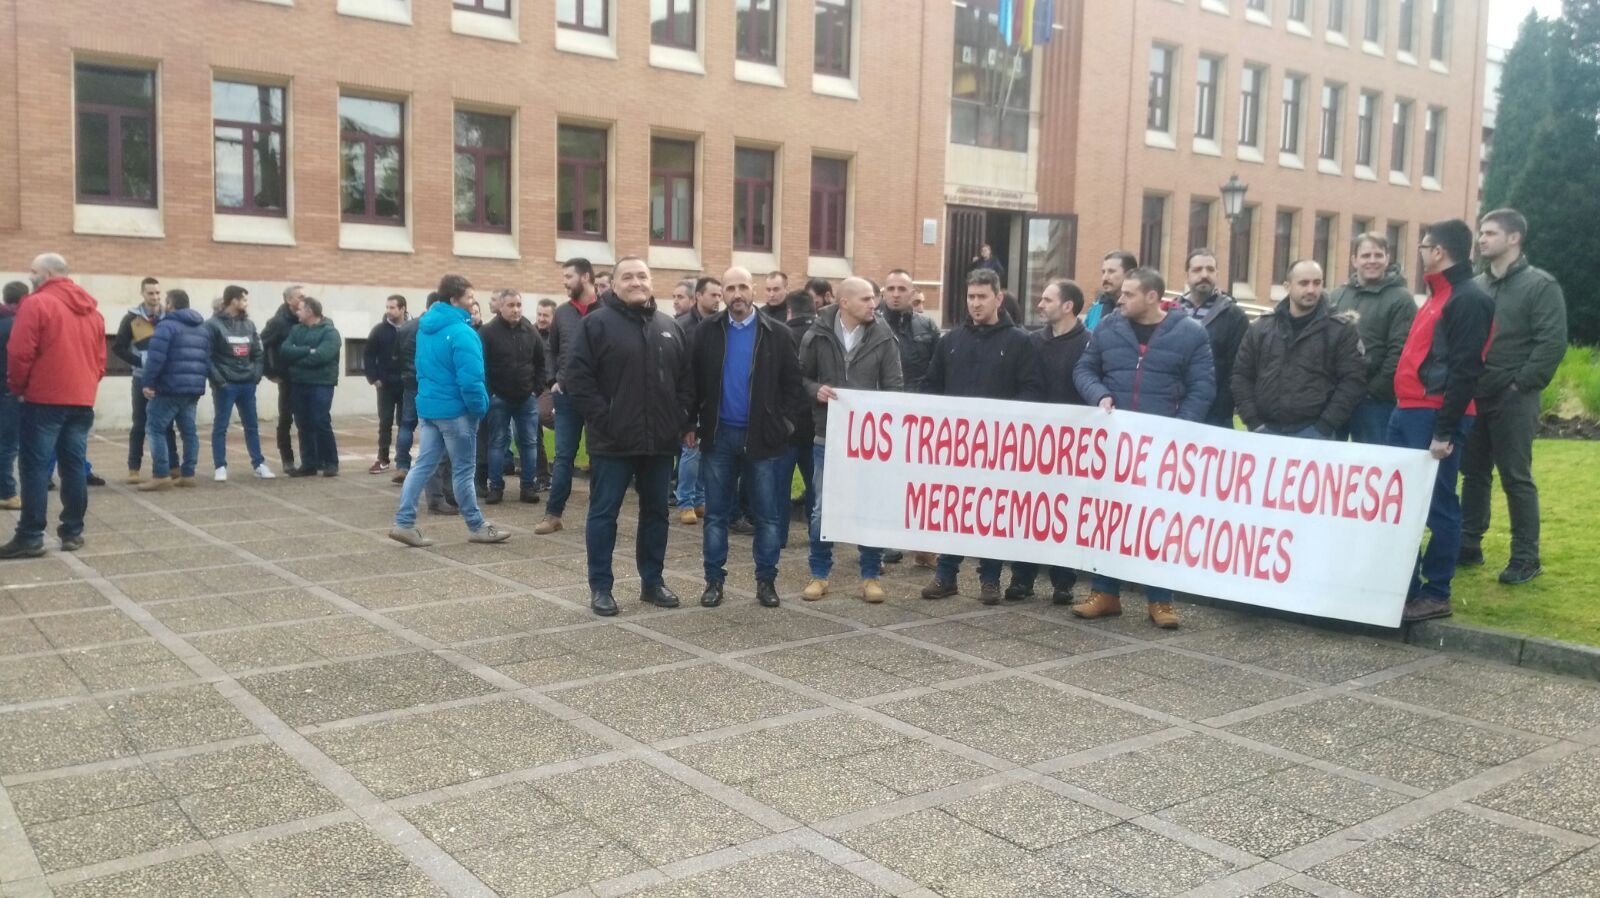 Imagen de la concentración del pasado jueves en Oviedo. | L.N.C.